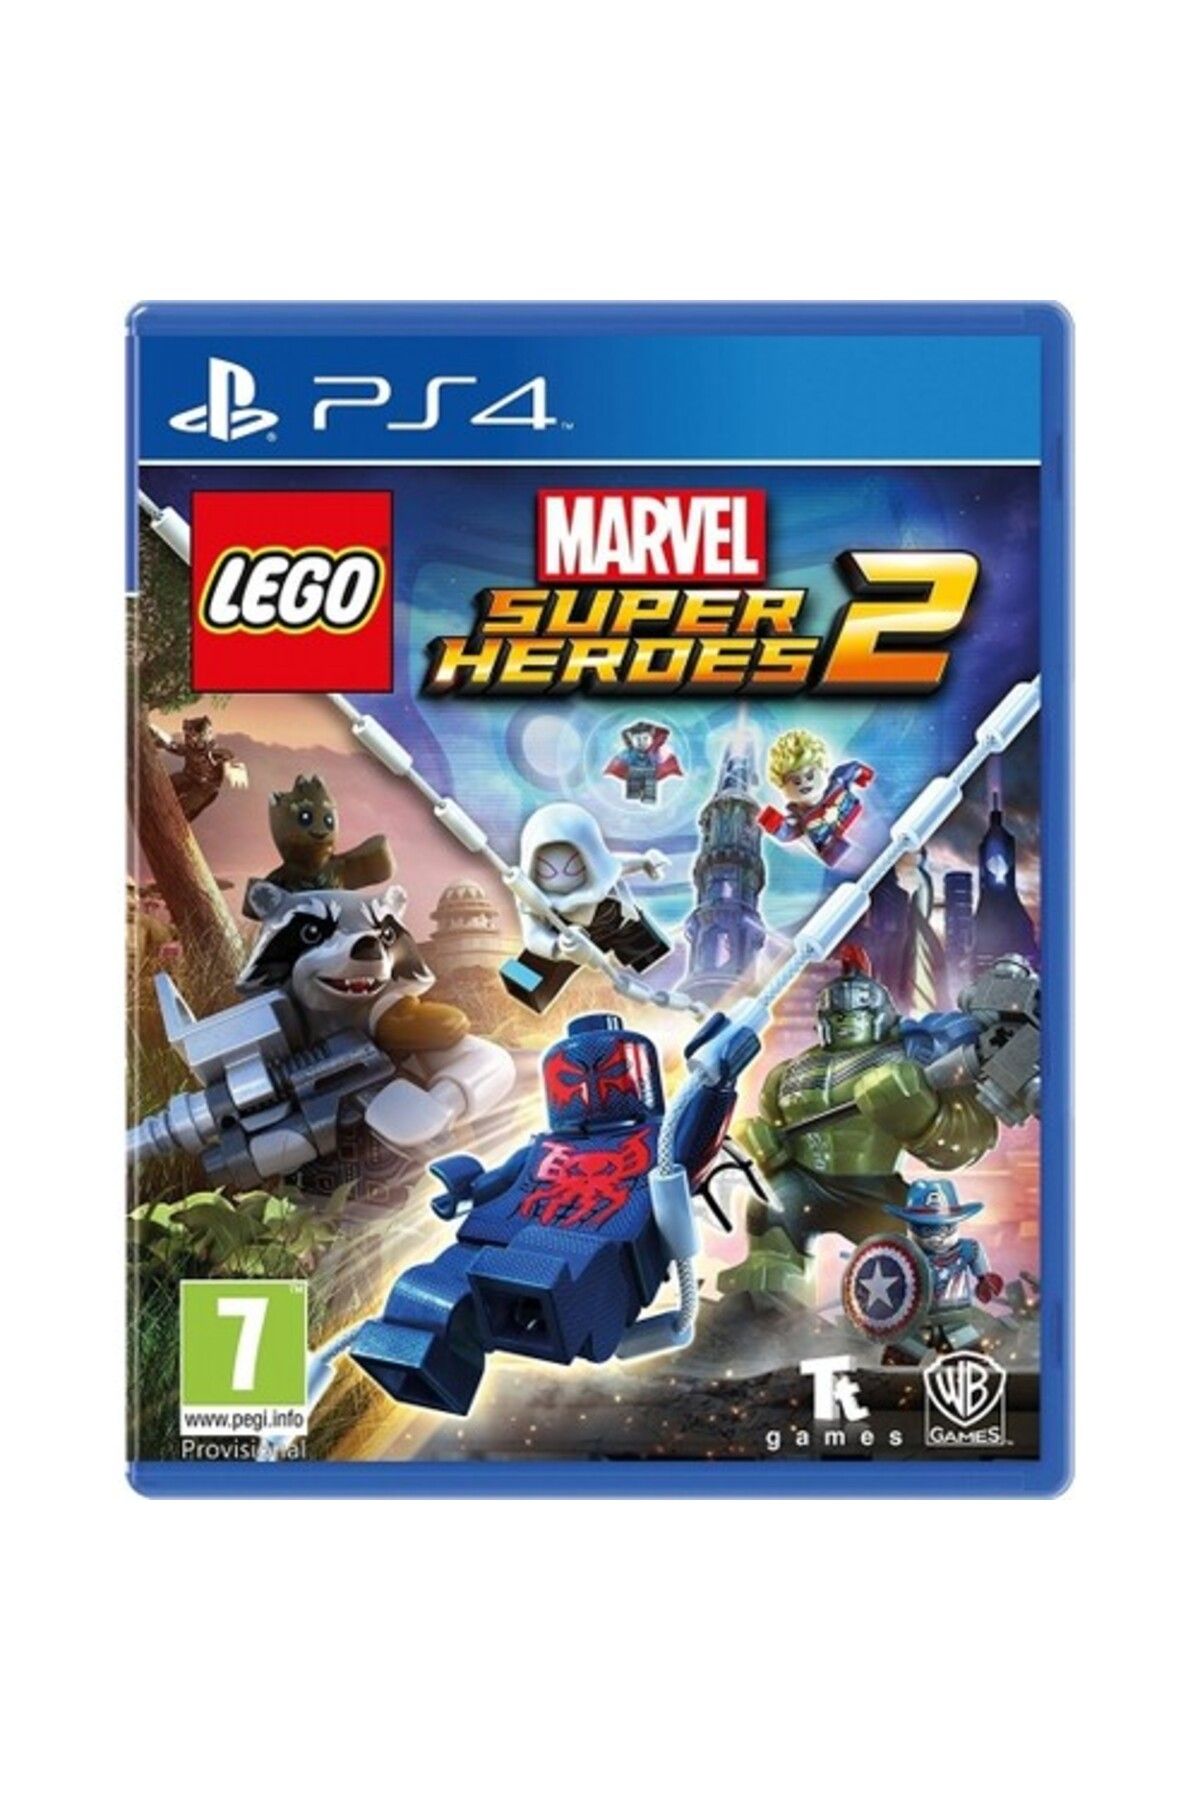 TT Games Ps4 Lego Marvel Super Heroes 2